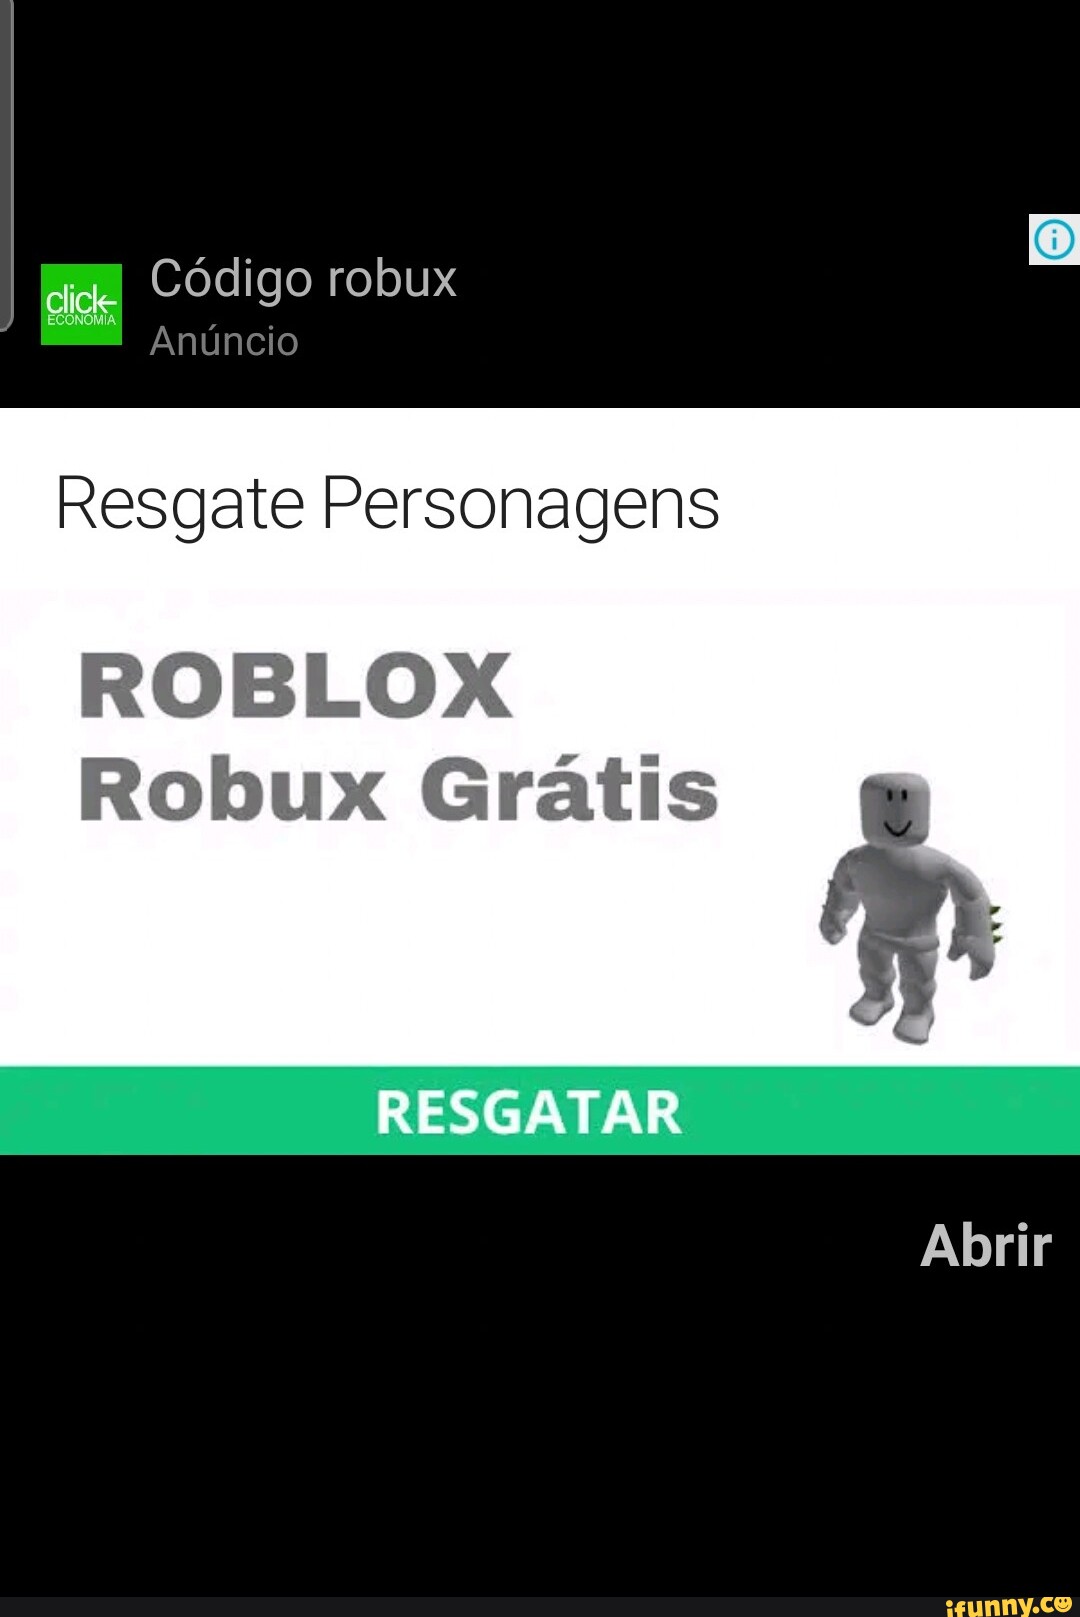 MAIS CÓDIGO DE ROBUX GRATIS FREE CODES PROMOCODE PARA PEGAR PARA O ROBLOX